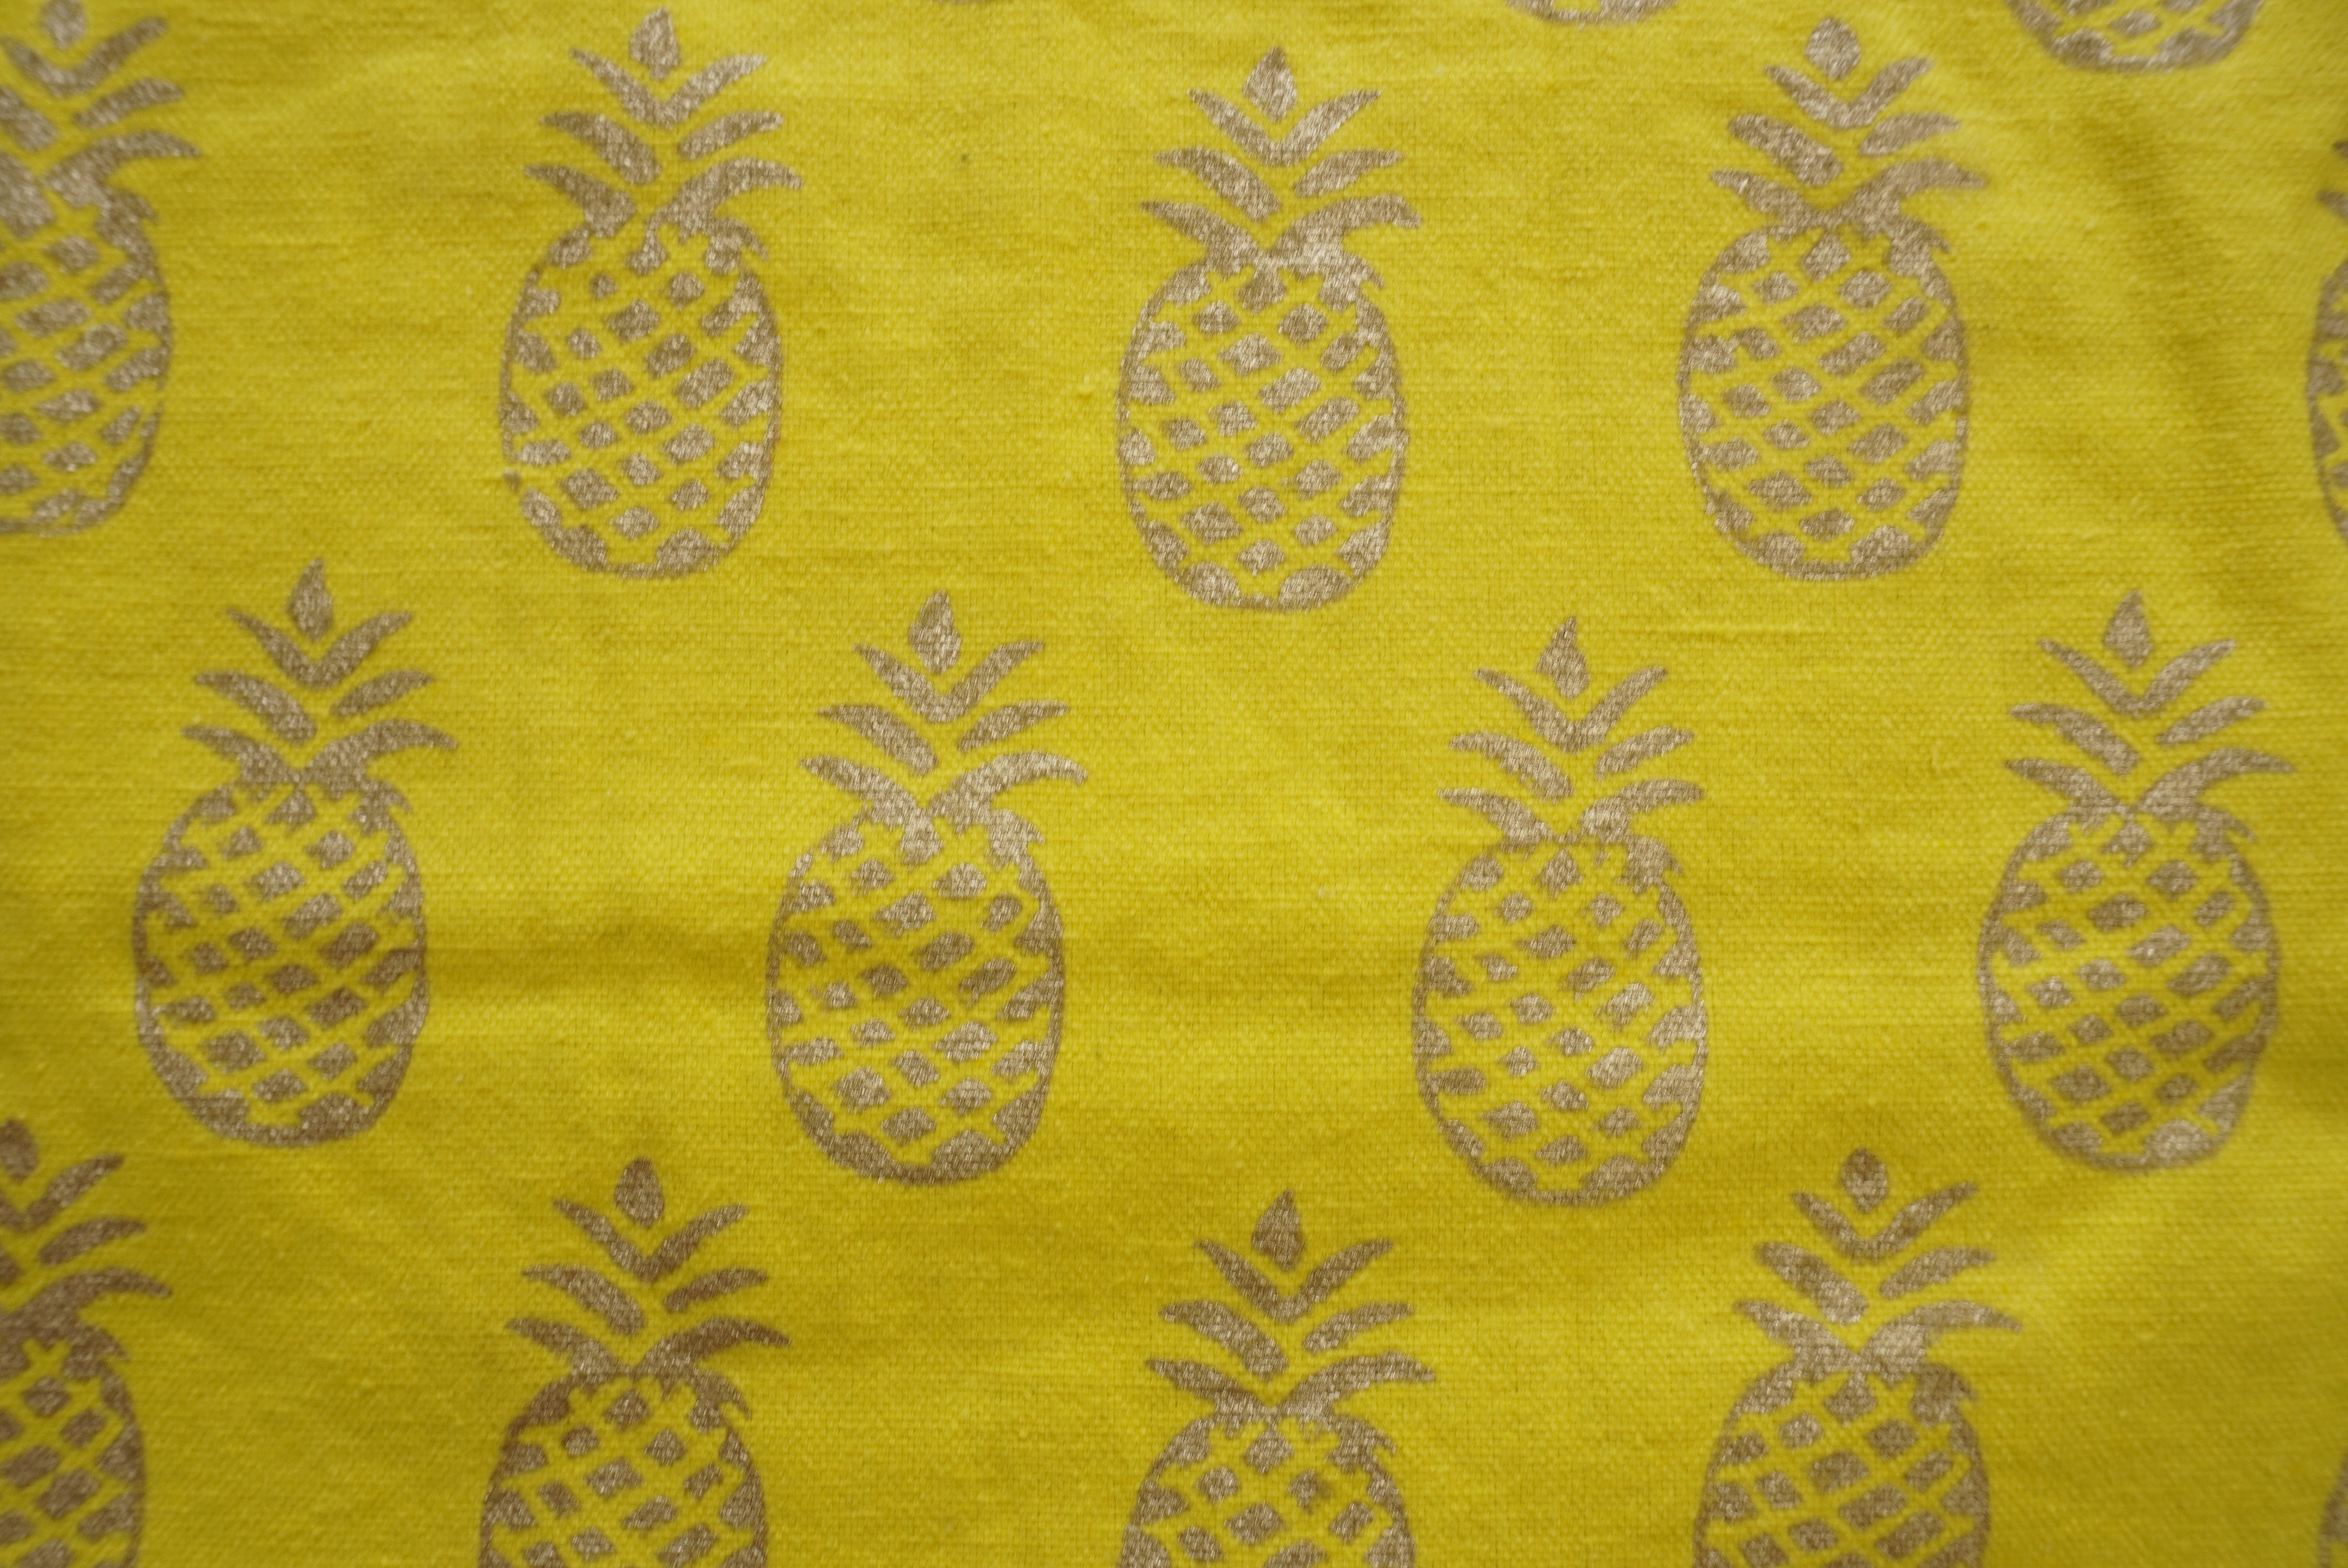 Block print tote bag - pineapples